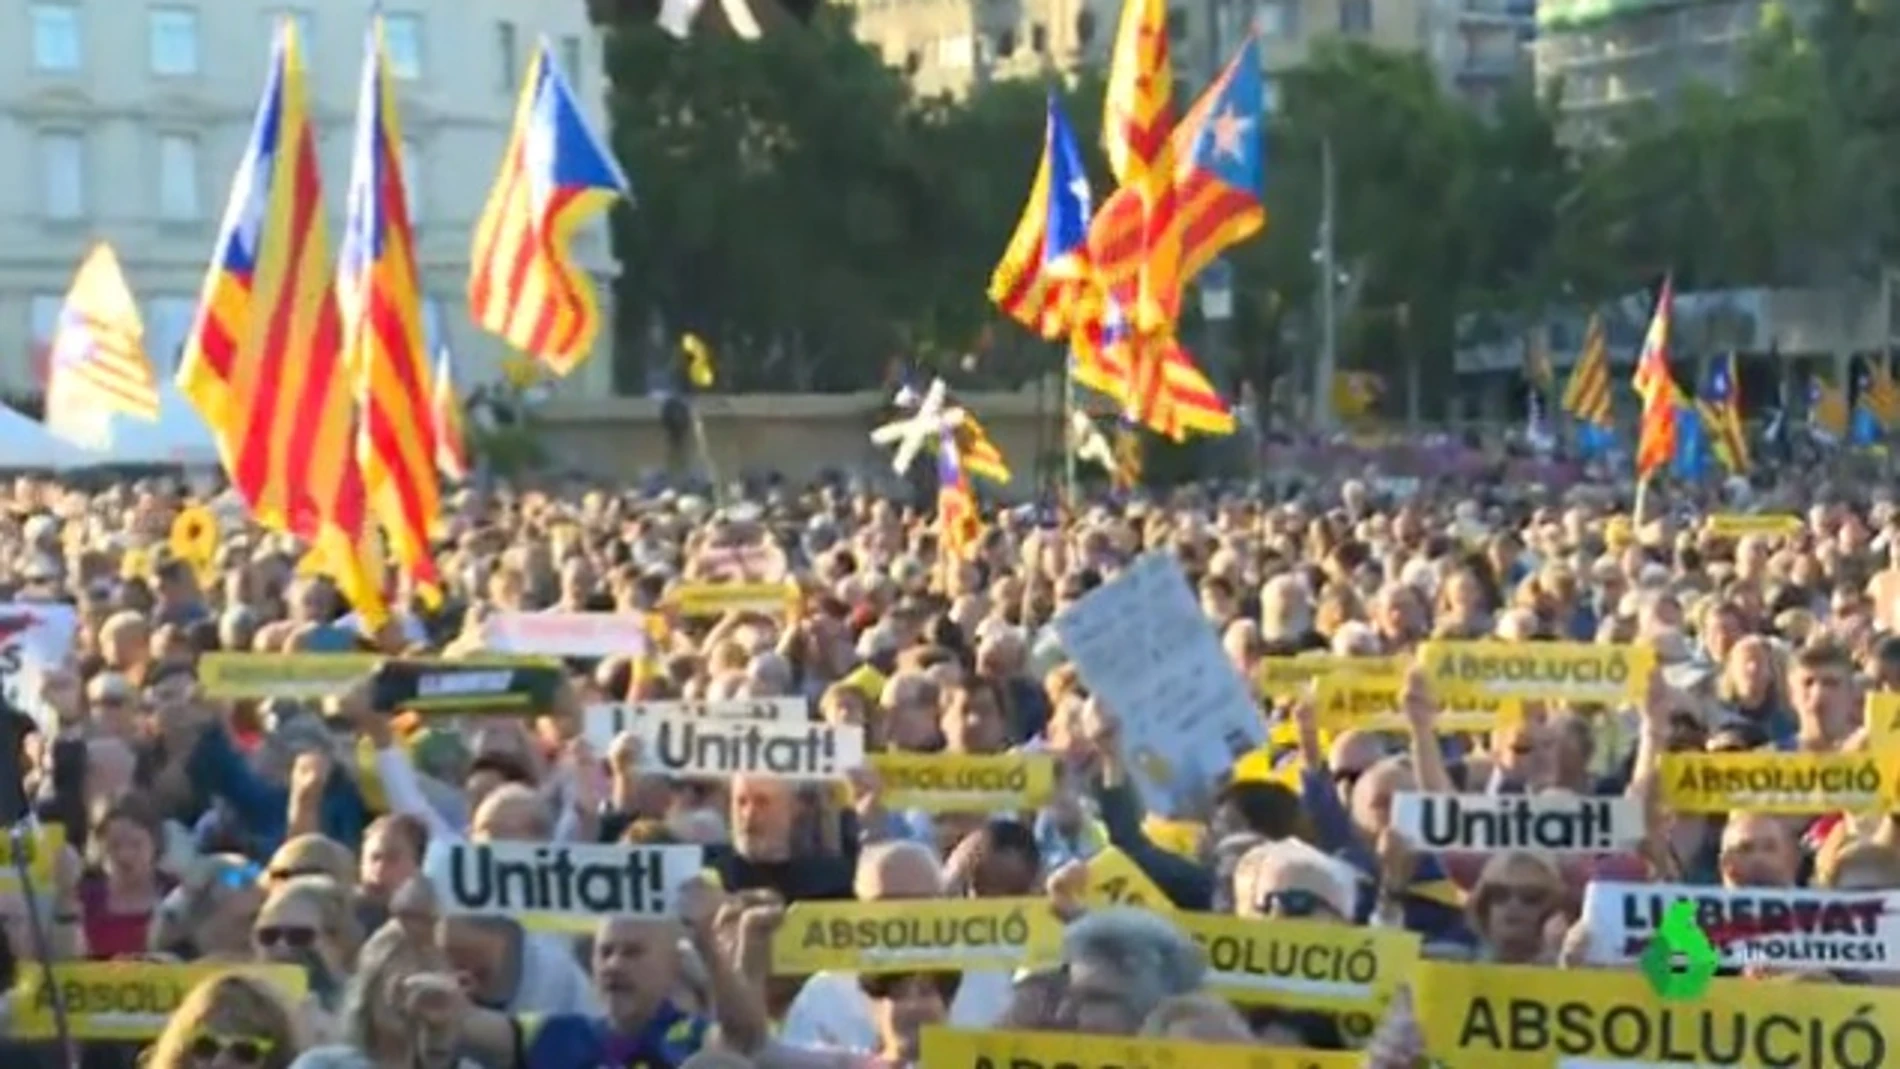 Imagen de la concentración que se ha llevado a cabo en la Plaza de Catalunya, Barcelona.